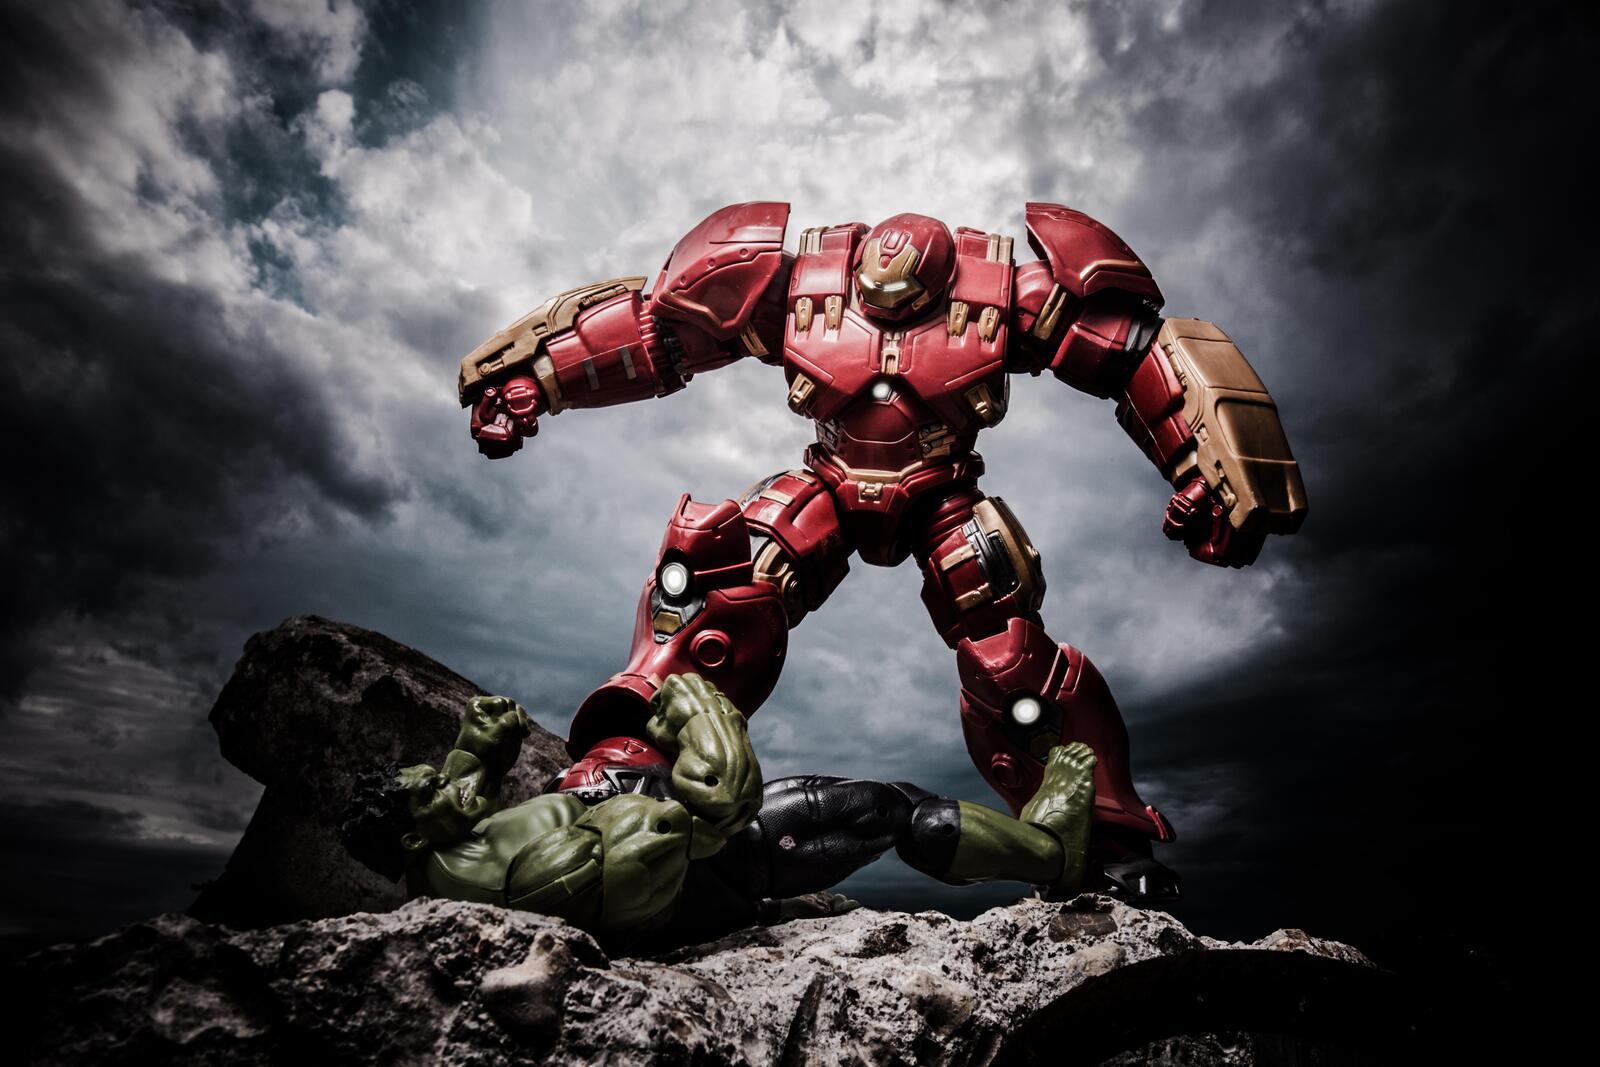 Wallpapers artist Iron Man hulkbuster on the desktop